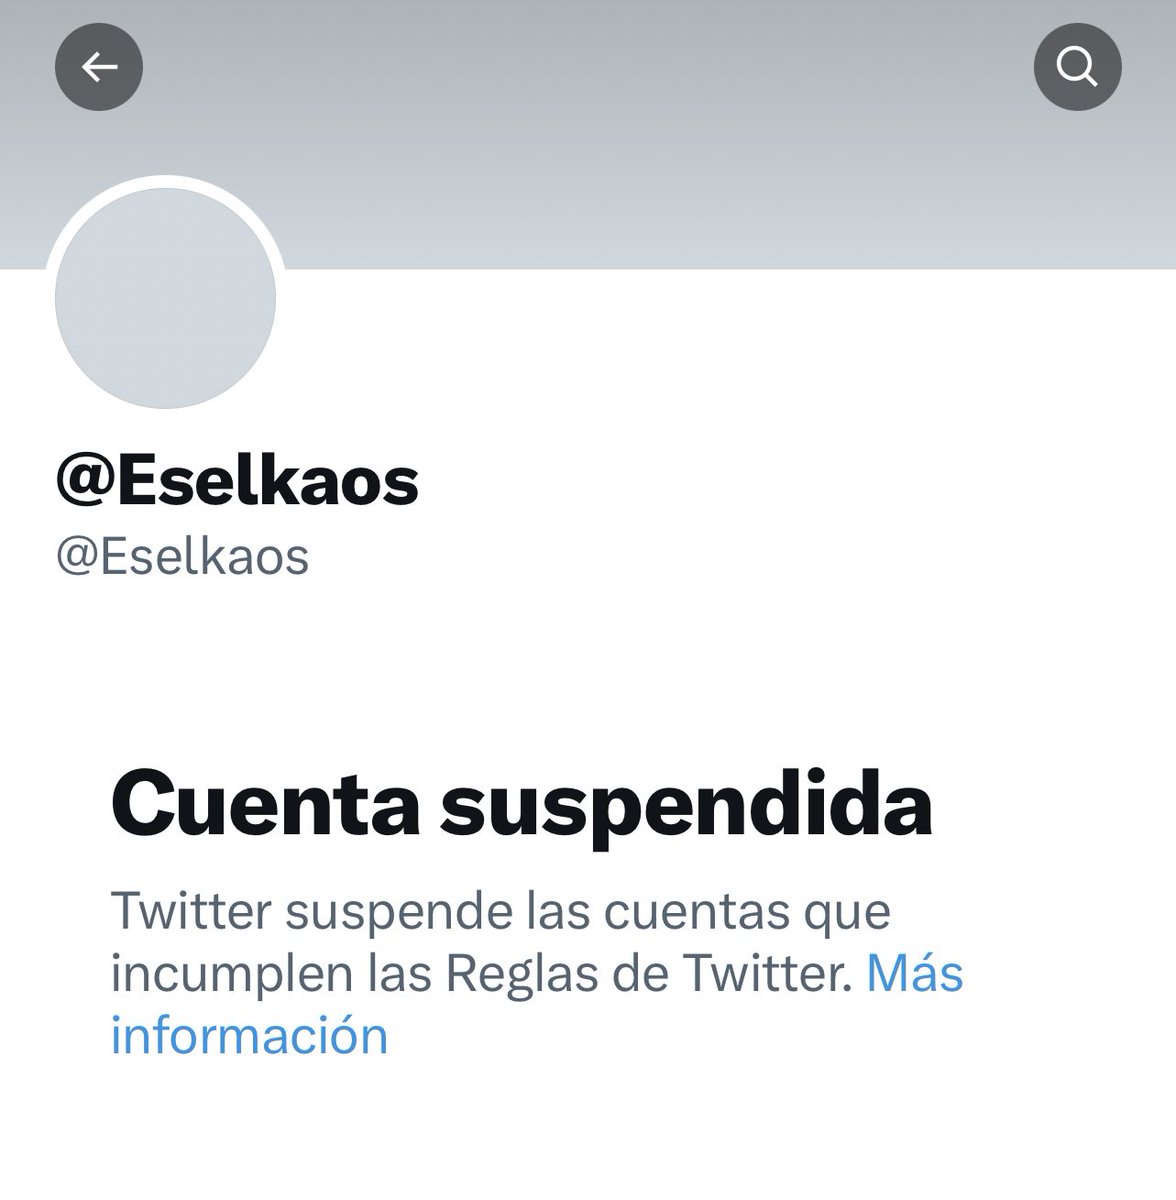 Suspenden la cuenta de Pedro Honrubia, es indignante! Mientras los fascistas campan a sus anchas sin problemas 😡 Vergüenza de Twitter, X o como se llame!